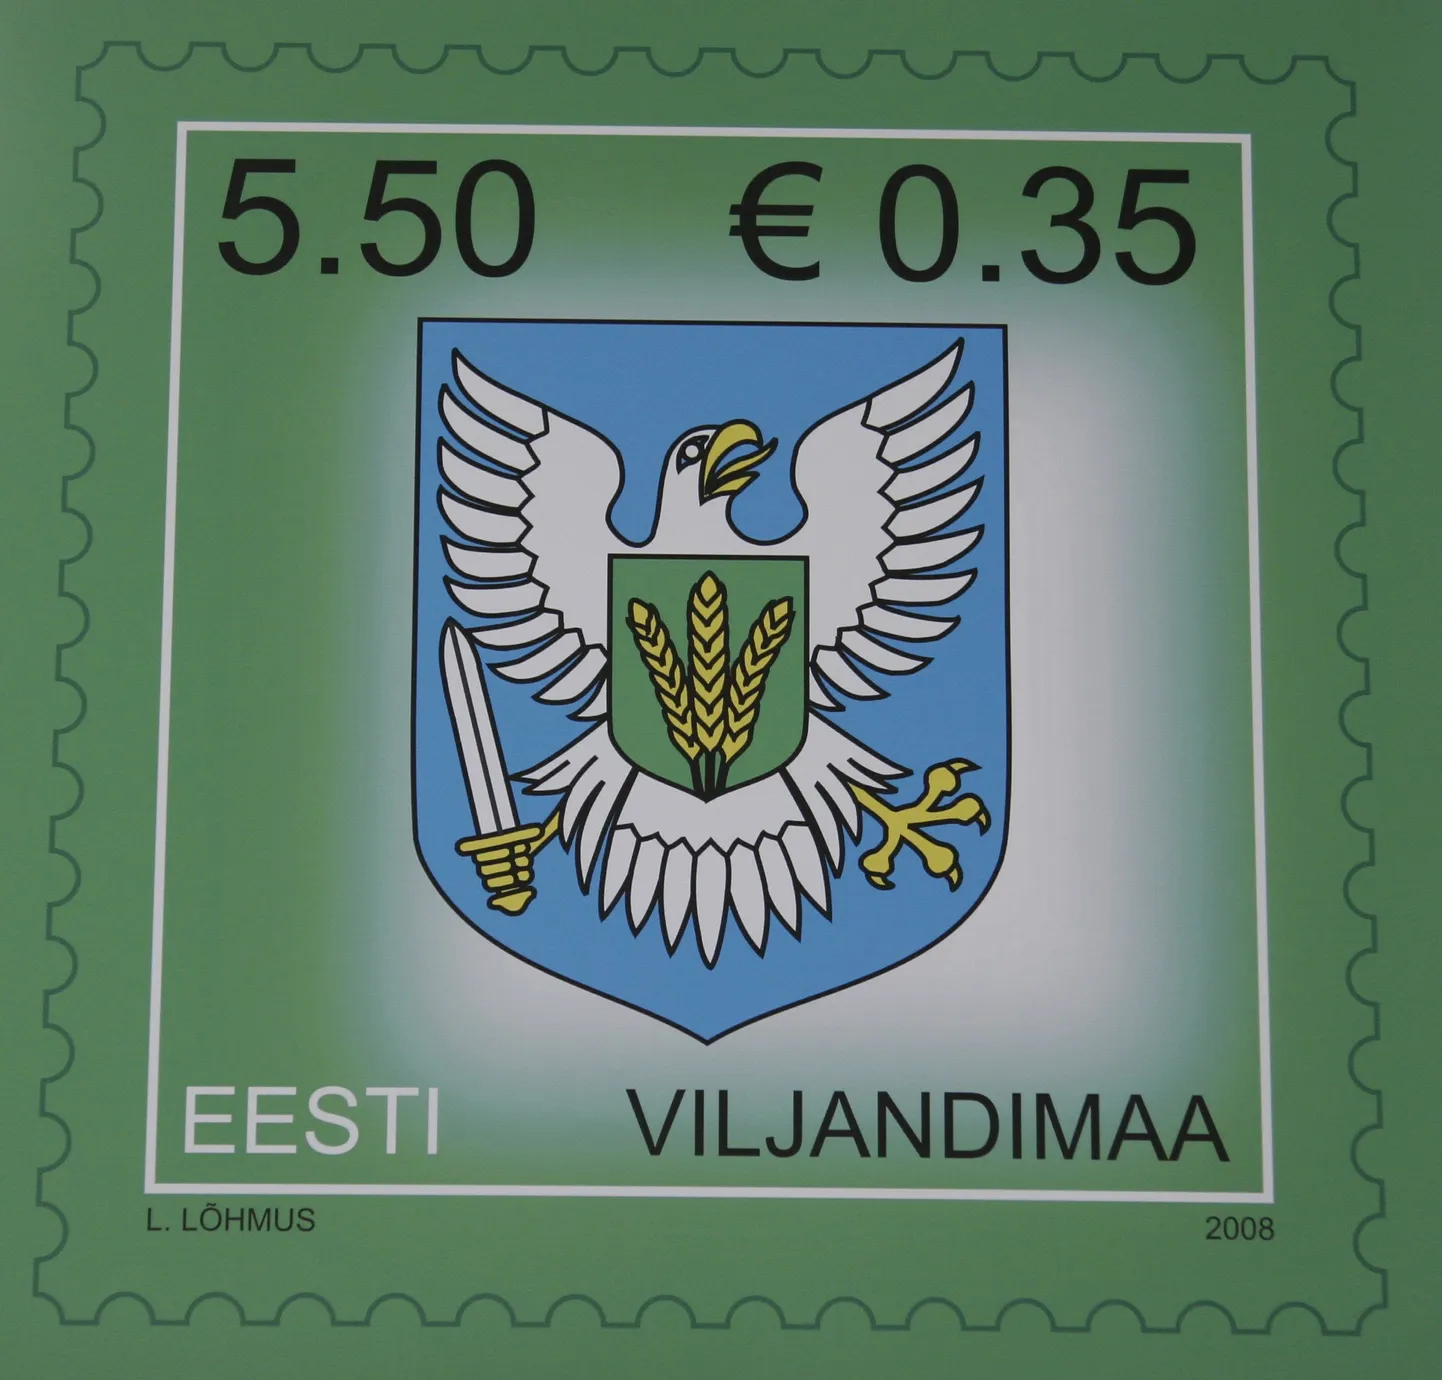 Pildil Viljandimaa postmark.